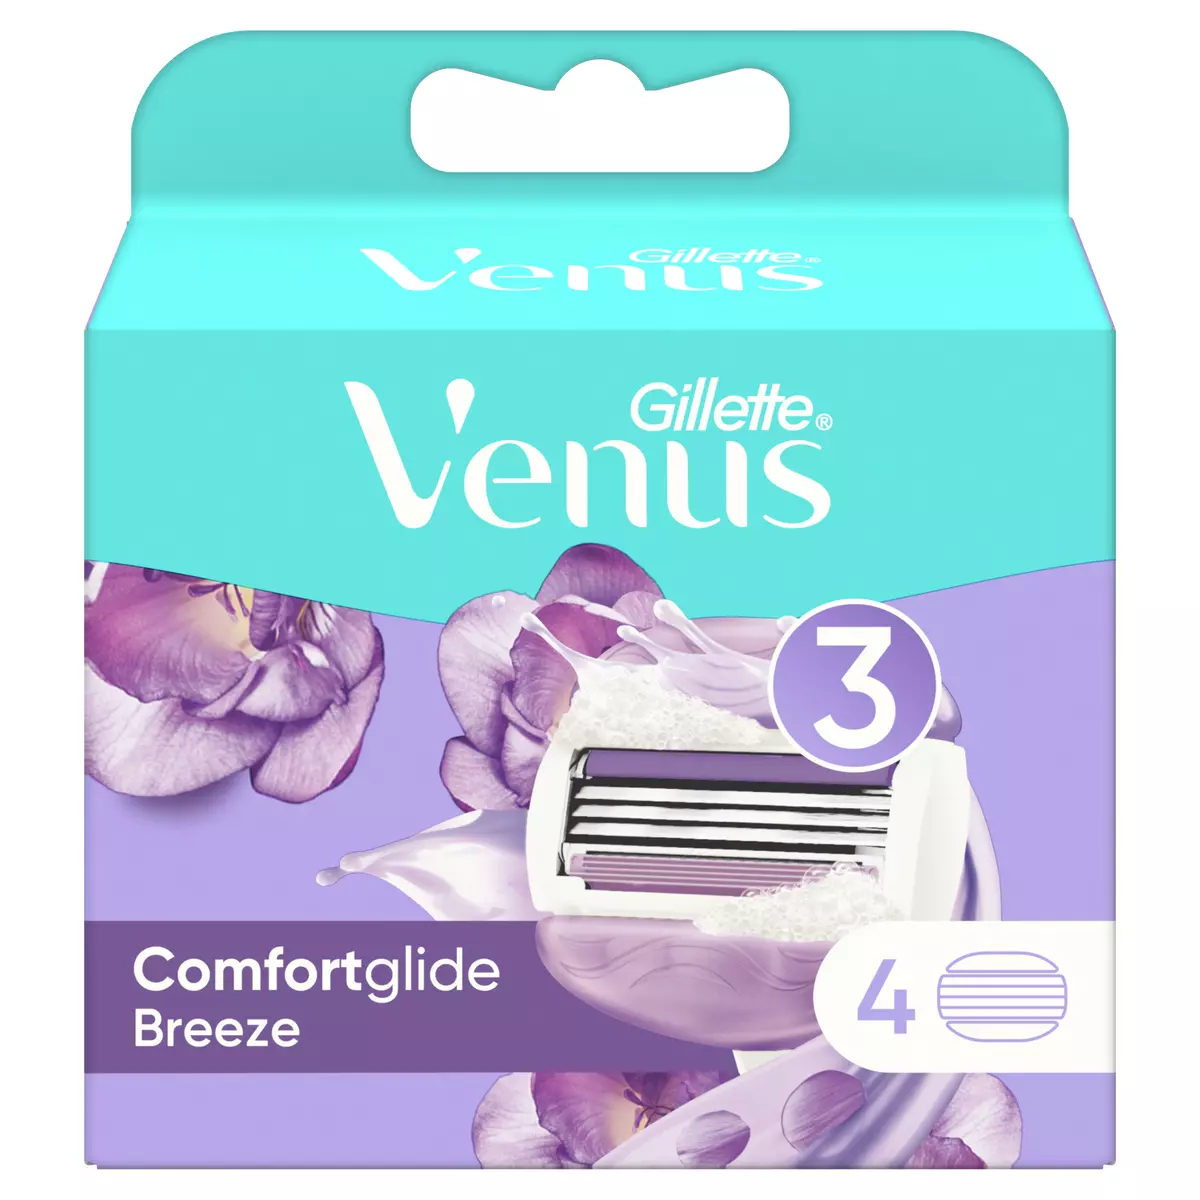 VENUS Comfortglide Breeze recharge pour rasoir femme Venus 4 recharges